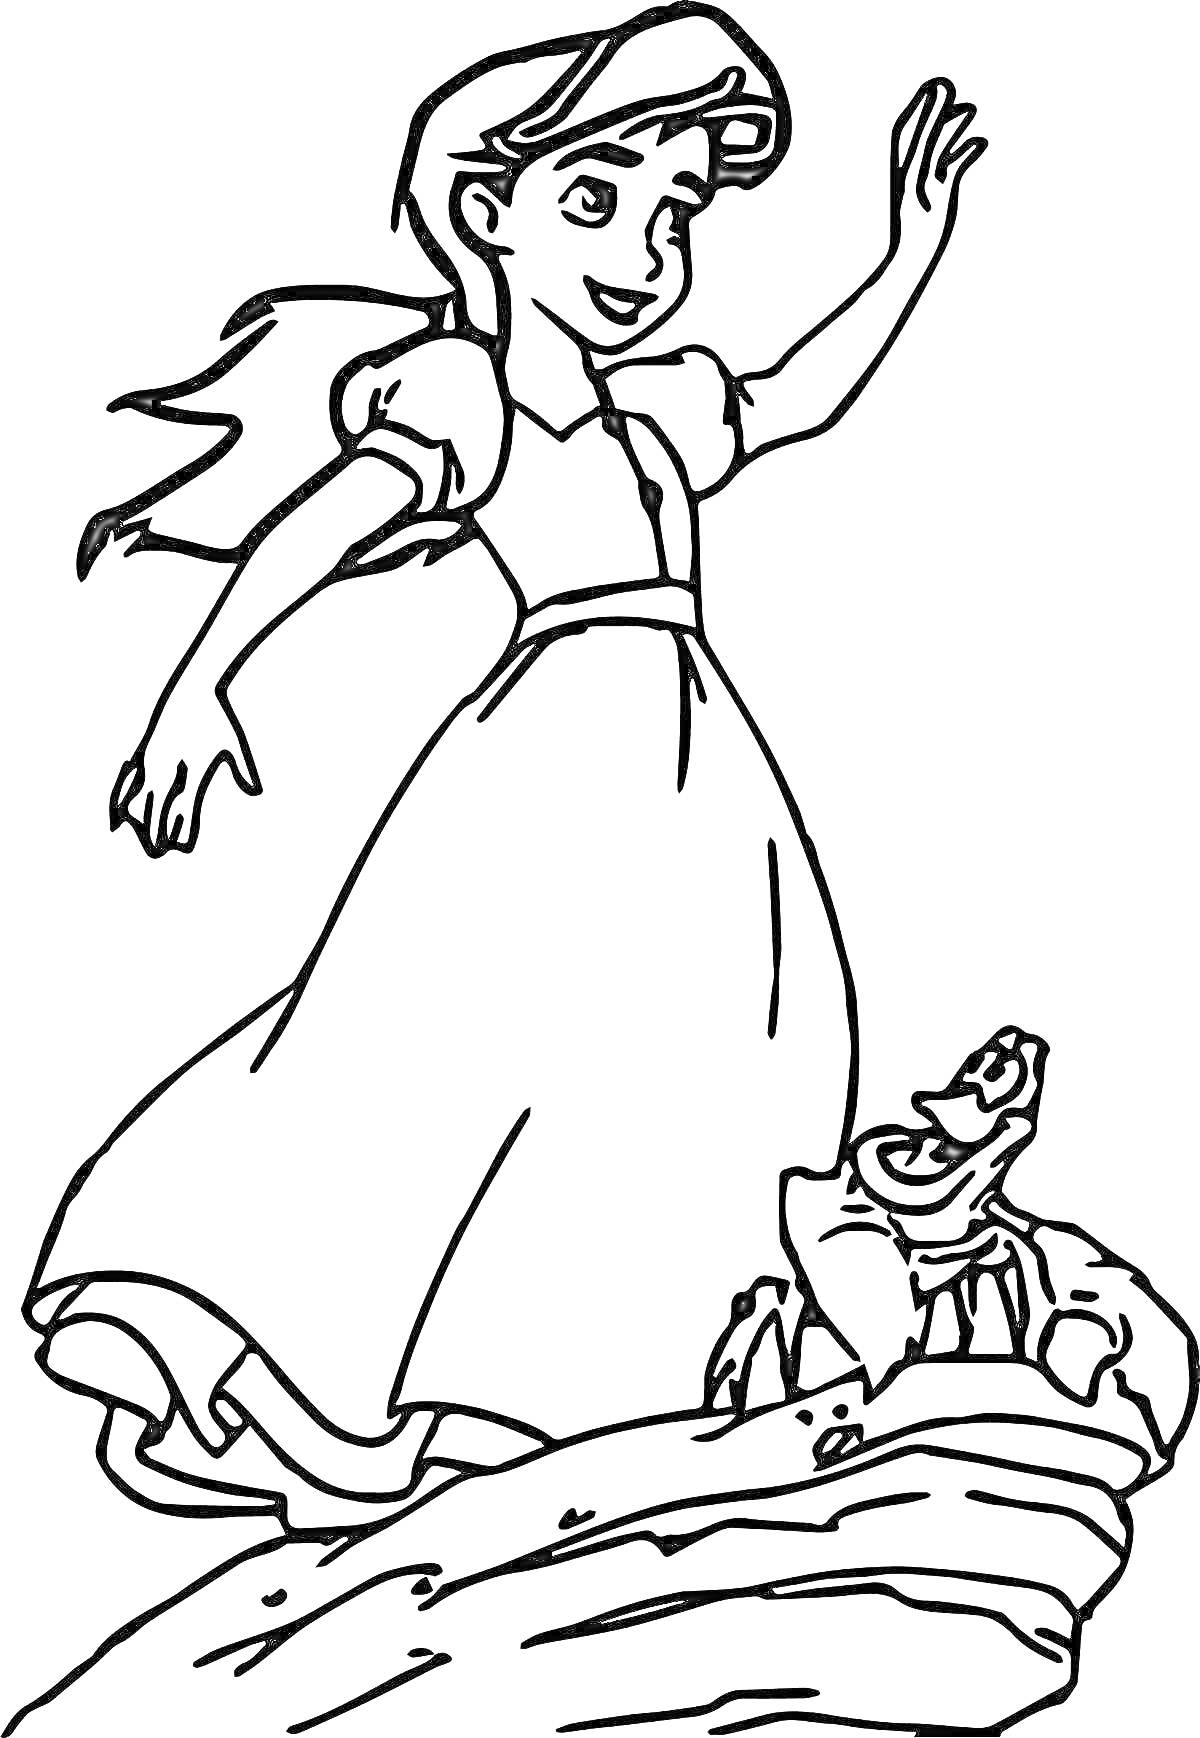 Раскраска Девушка в длинном платье с распущенными волосами и черепаха на камне